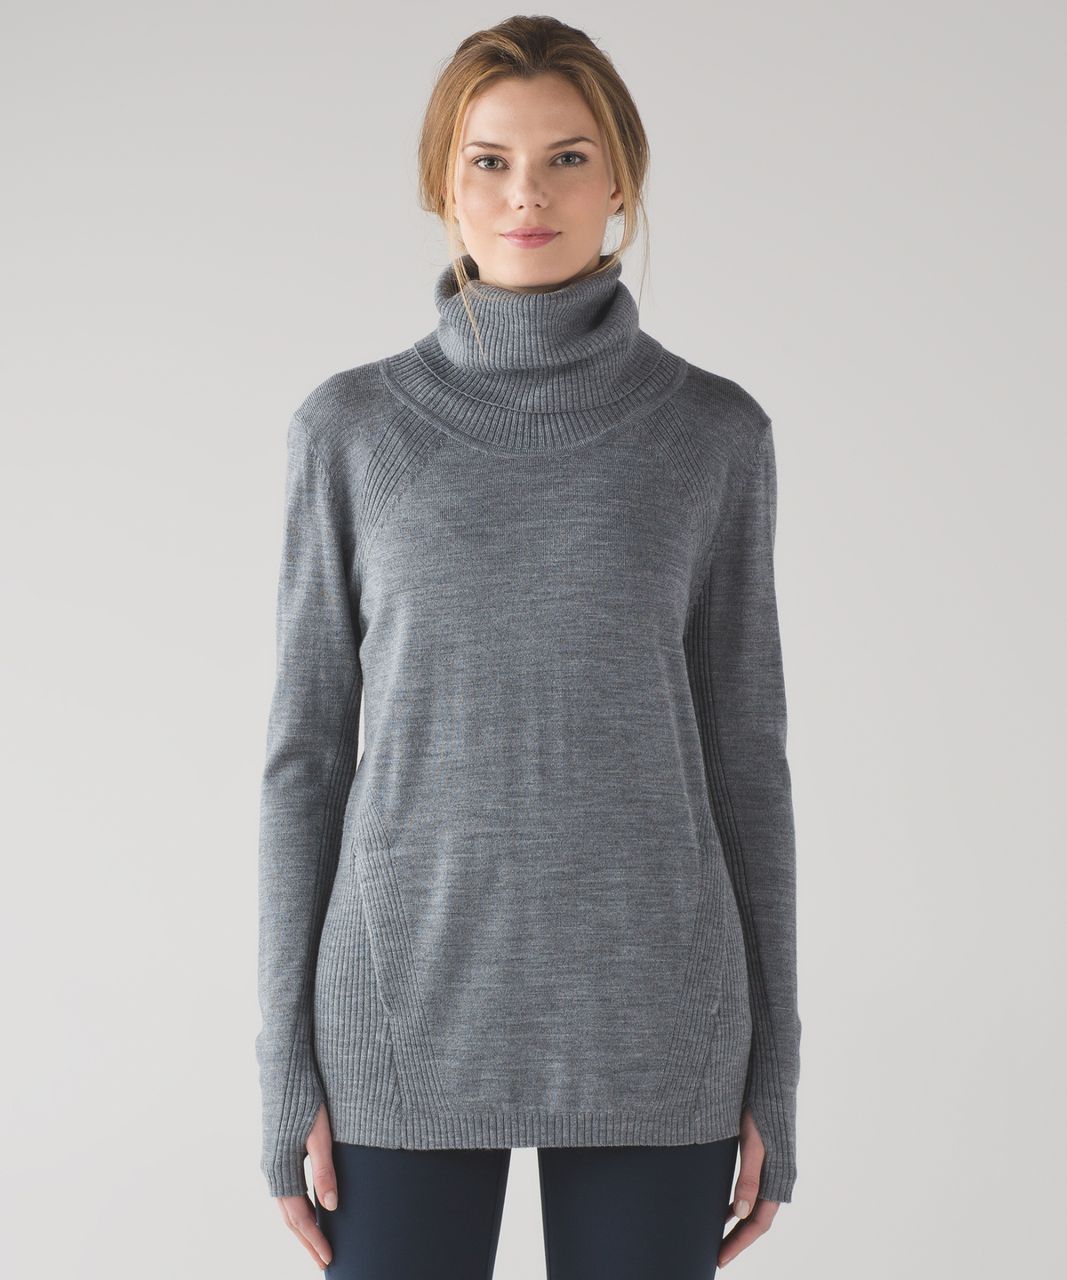 Lululemon Women's Sweat and Savasana Merino Wool Sweater Turtleneck Dark  Gray 6